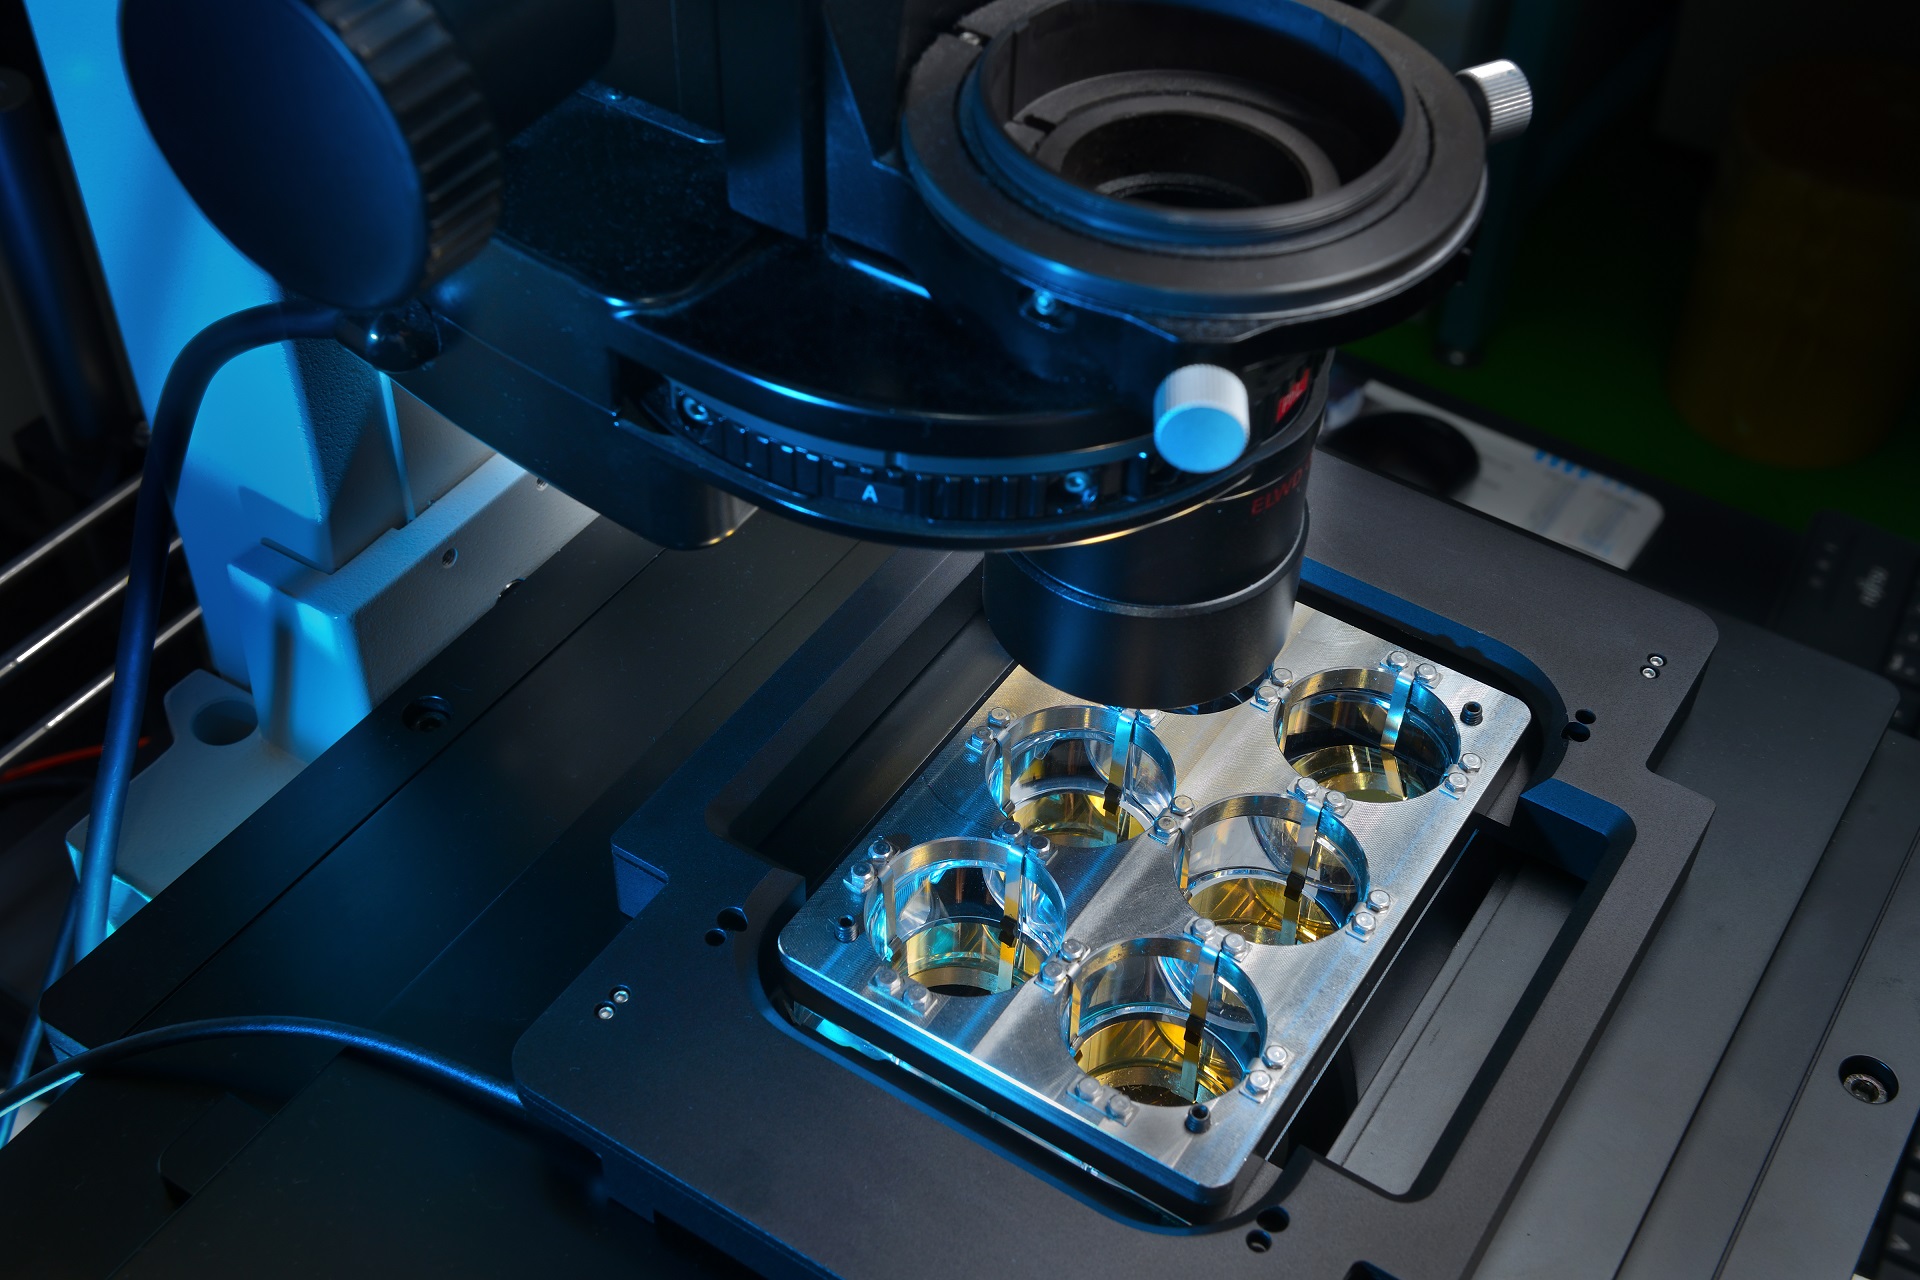 Das MIR LIFT-Verfahren transferiert lebende Zellen mit hoher Rate von bis zu 100 Hz nacheinander auf Mikrotiterplatten (MTP). Um den hocheffizienten Prozess herstellerunabhängig in Mikroskopie-Plattformen integrieren zu können, hat das Fraunhofer ILT u.a. die abgebildete Halterung für eine 6-Well-MTP entwickelt.